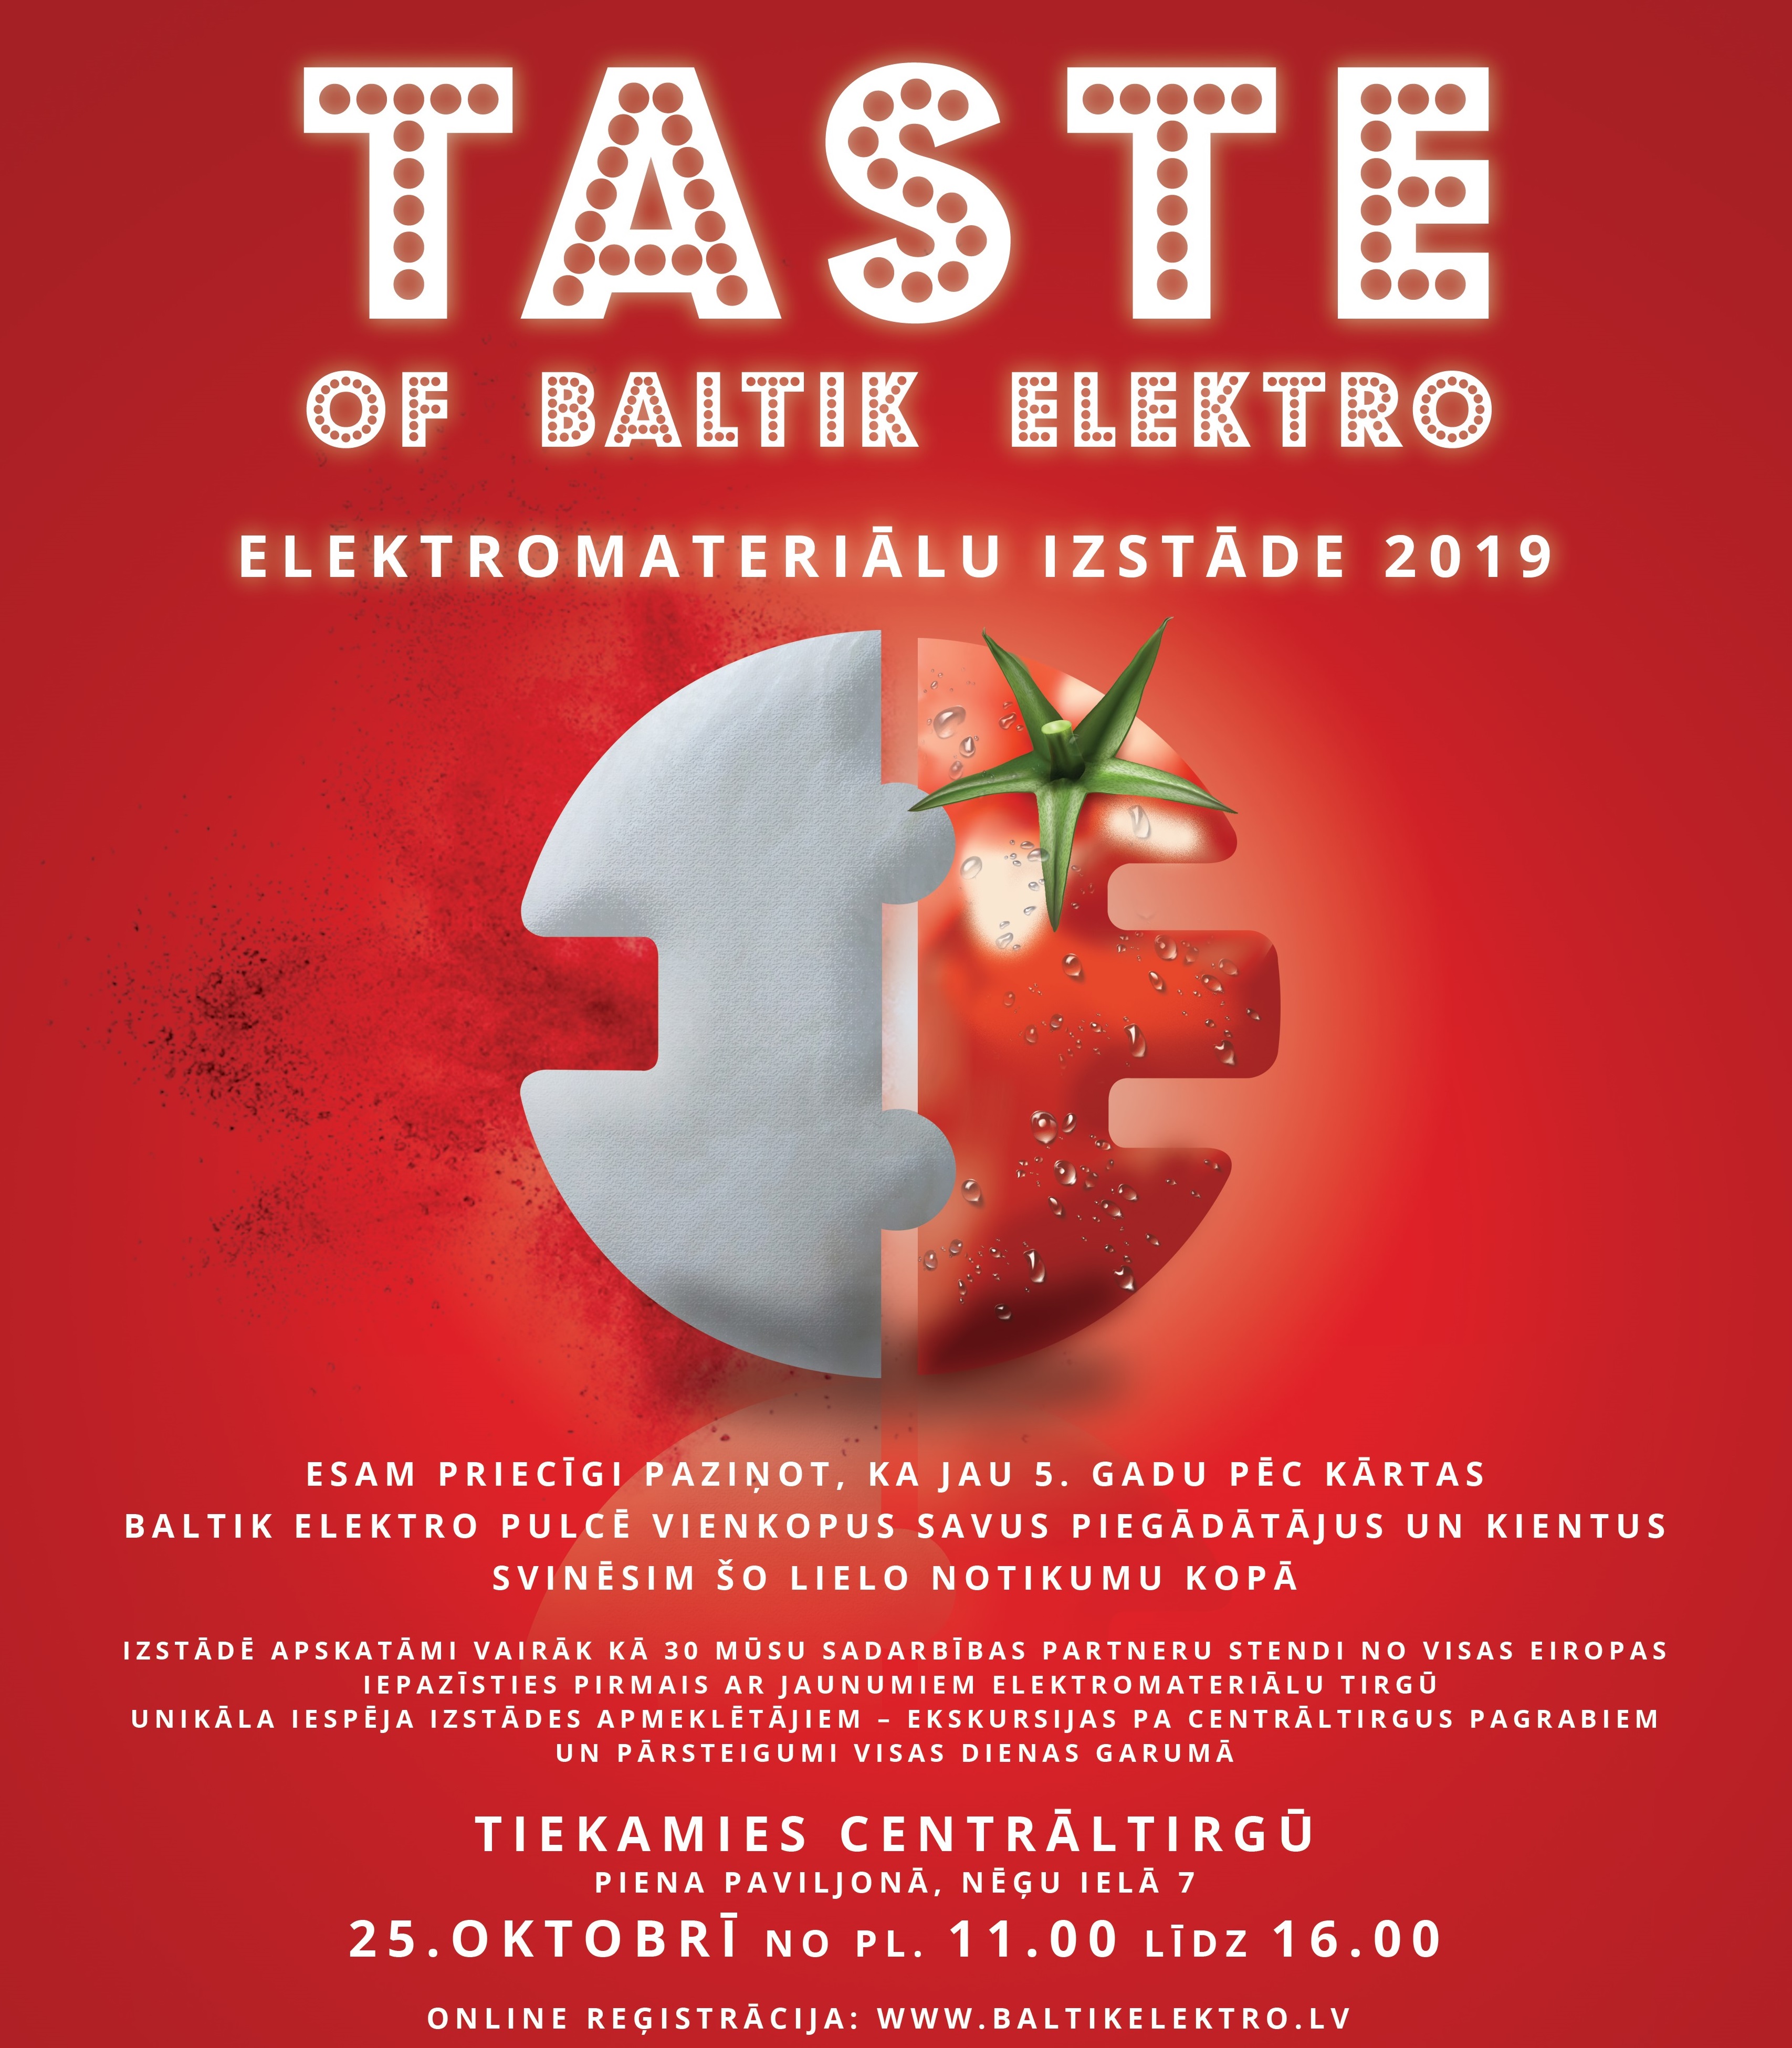 Eiropas labāko elektromateriālu ražotāji tiksies izstādē Taste of Baltik Elektro 2019 - Nekustamo īpašumu ziņas - City24.lv nekustamo īpašumu sludinājumu portāls